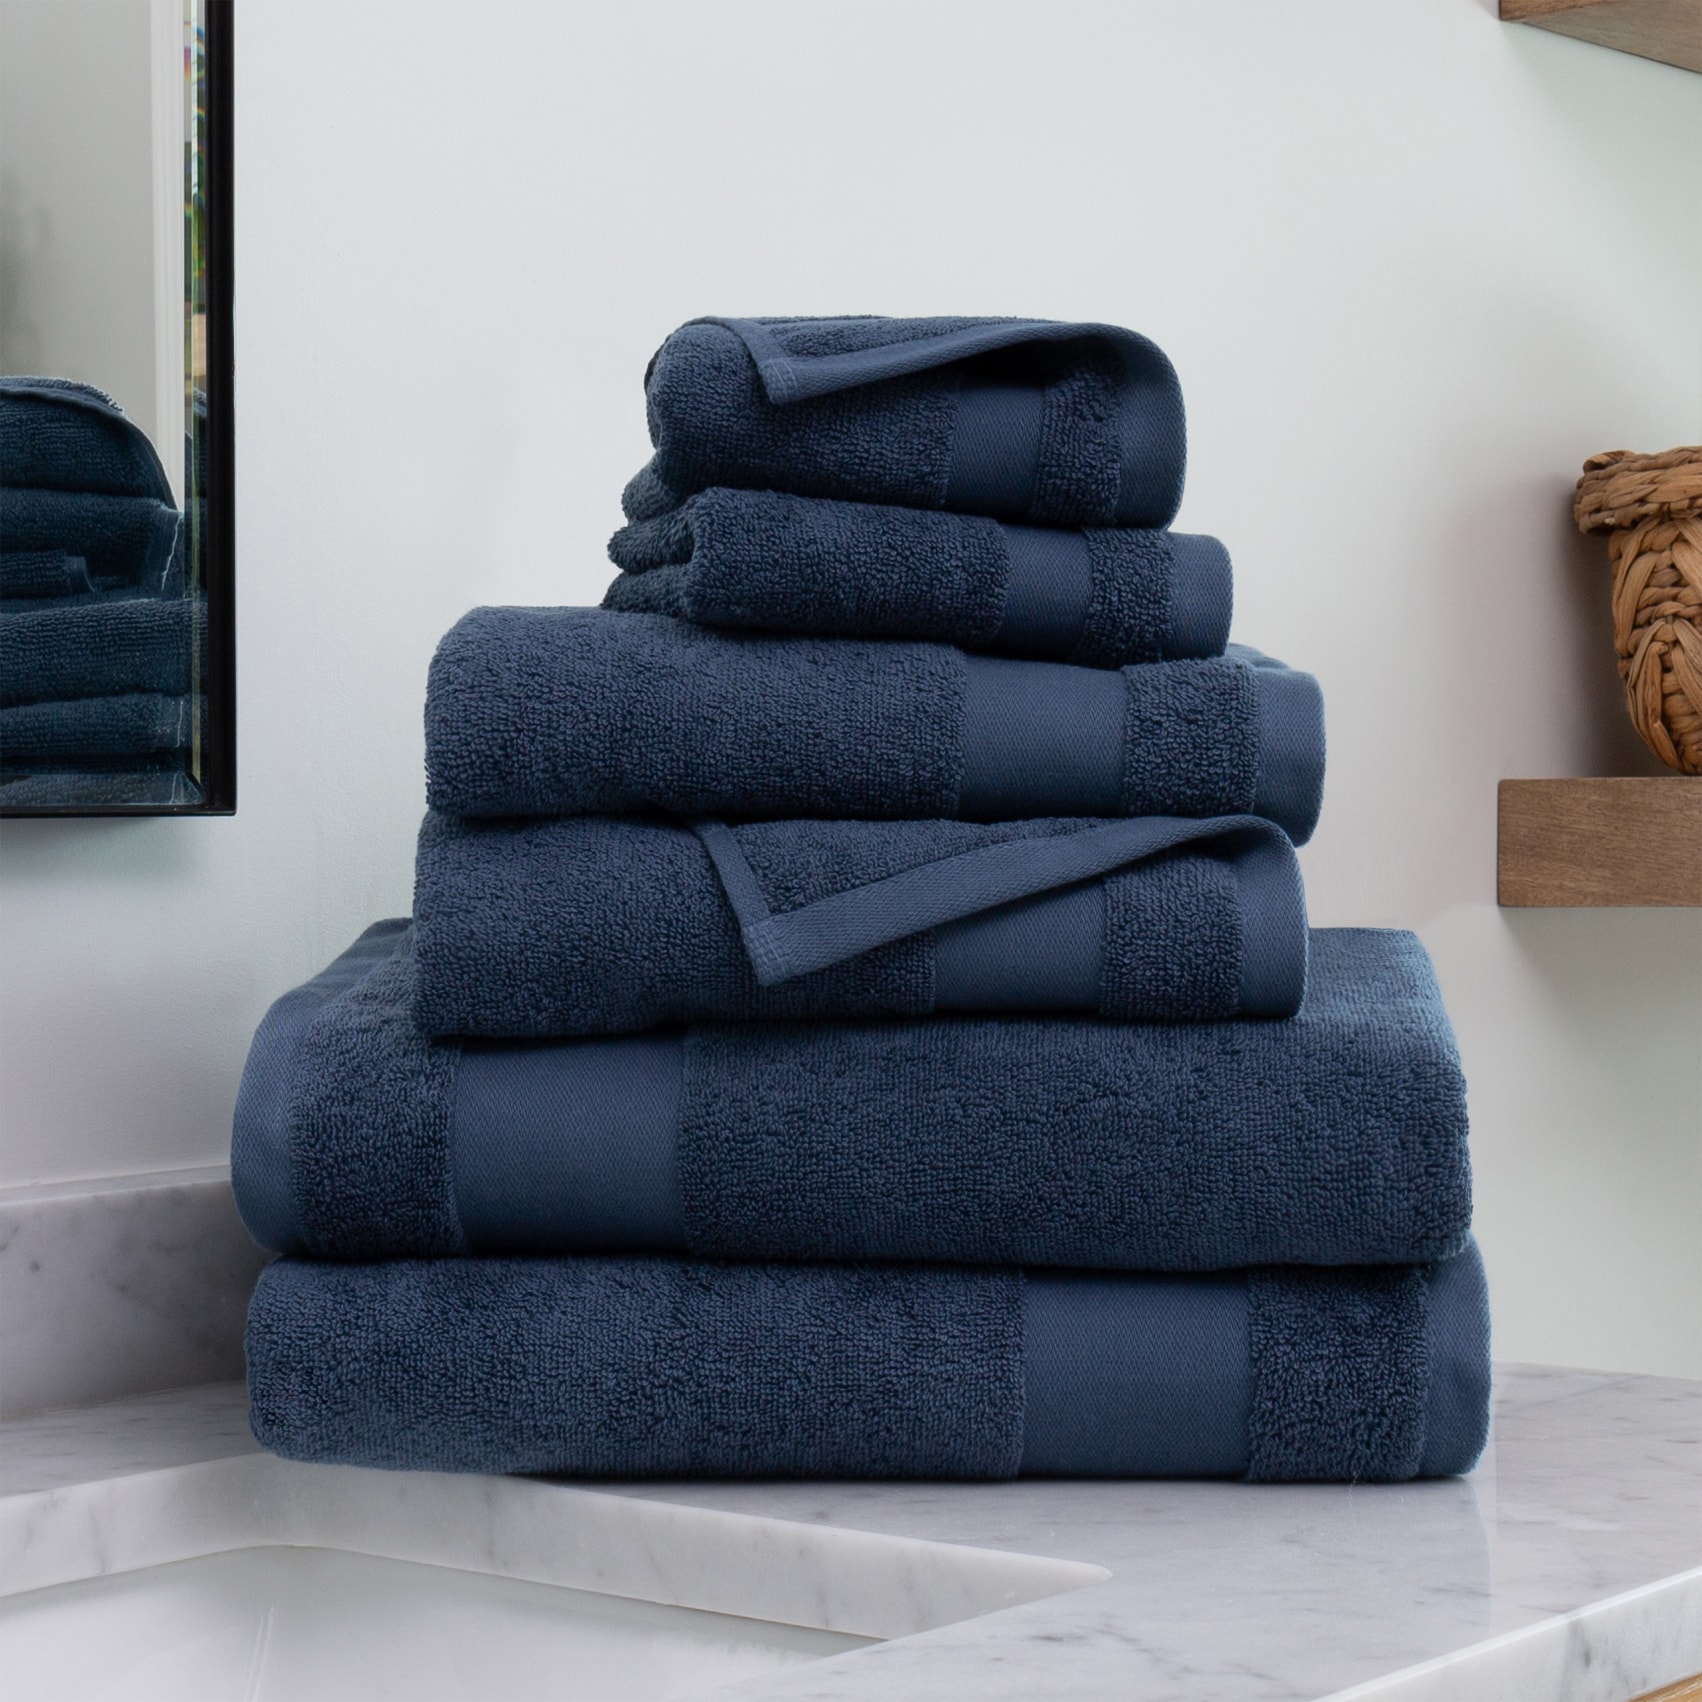 Lane Linen 10-Piece 100% Cotton Bath Towels for Bathroom Set - Grey 